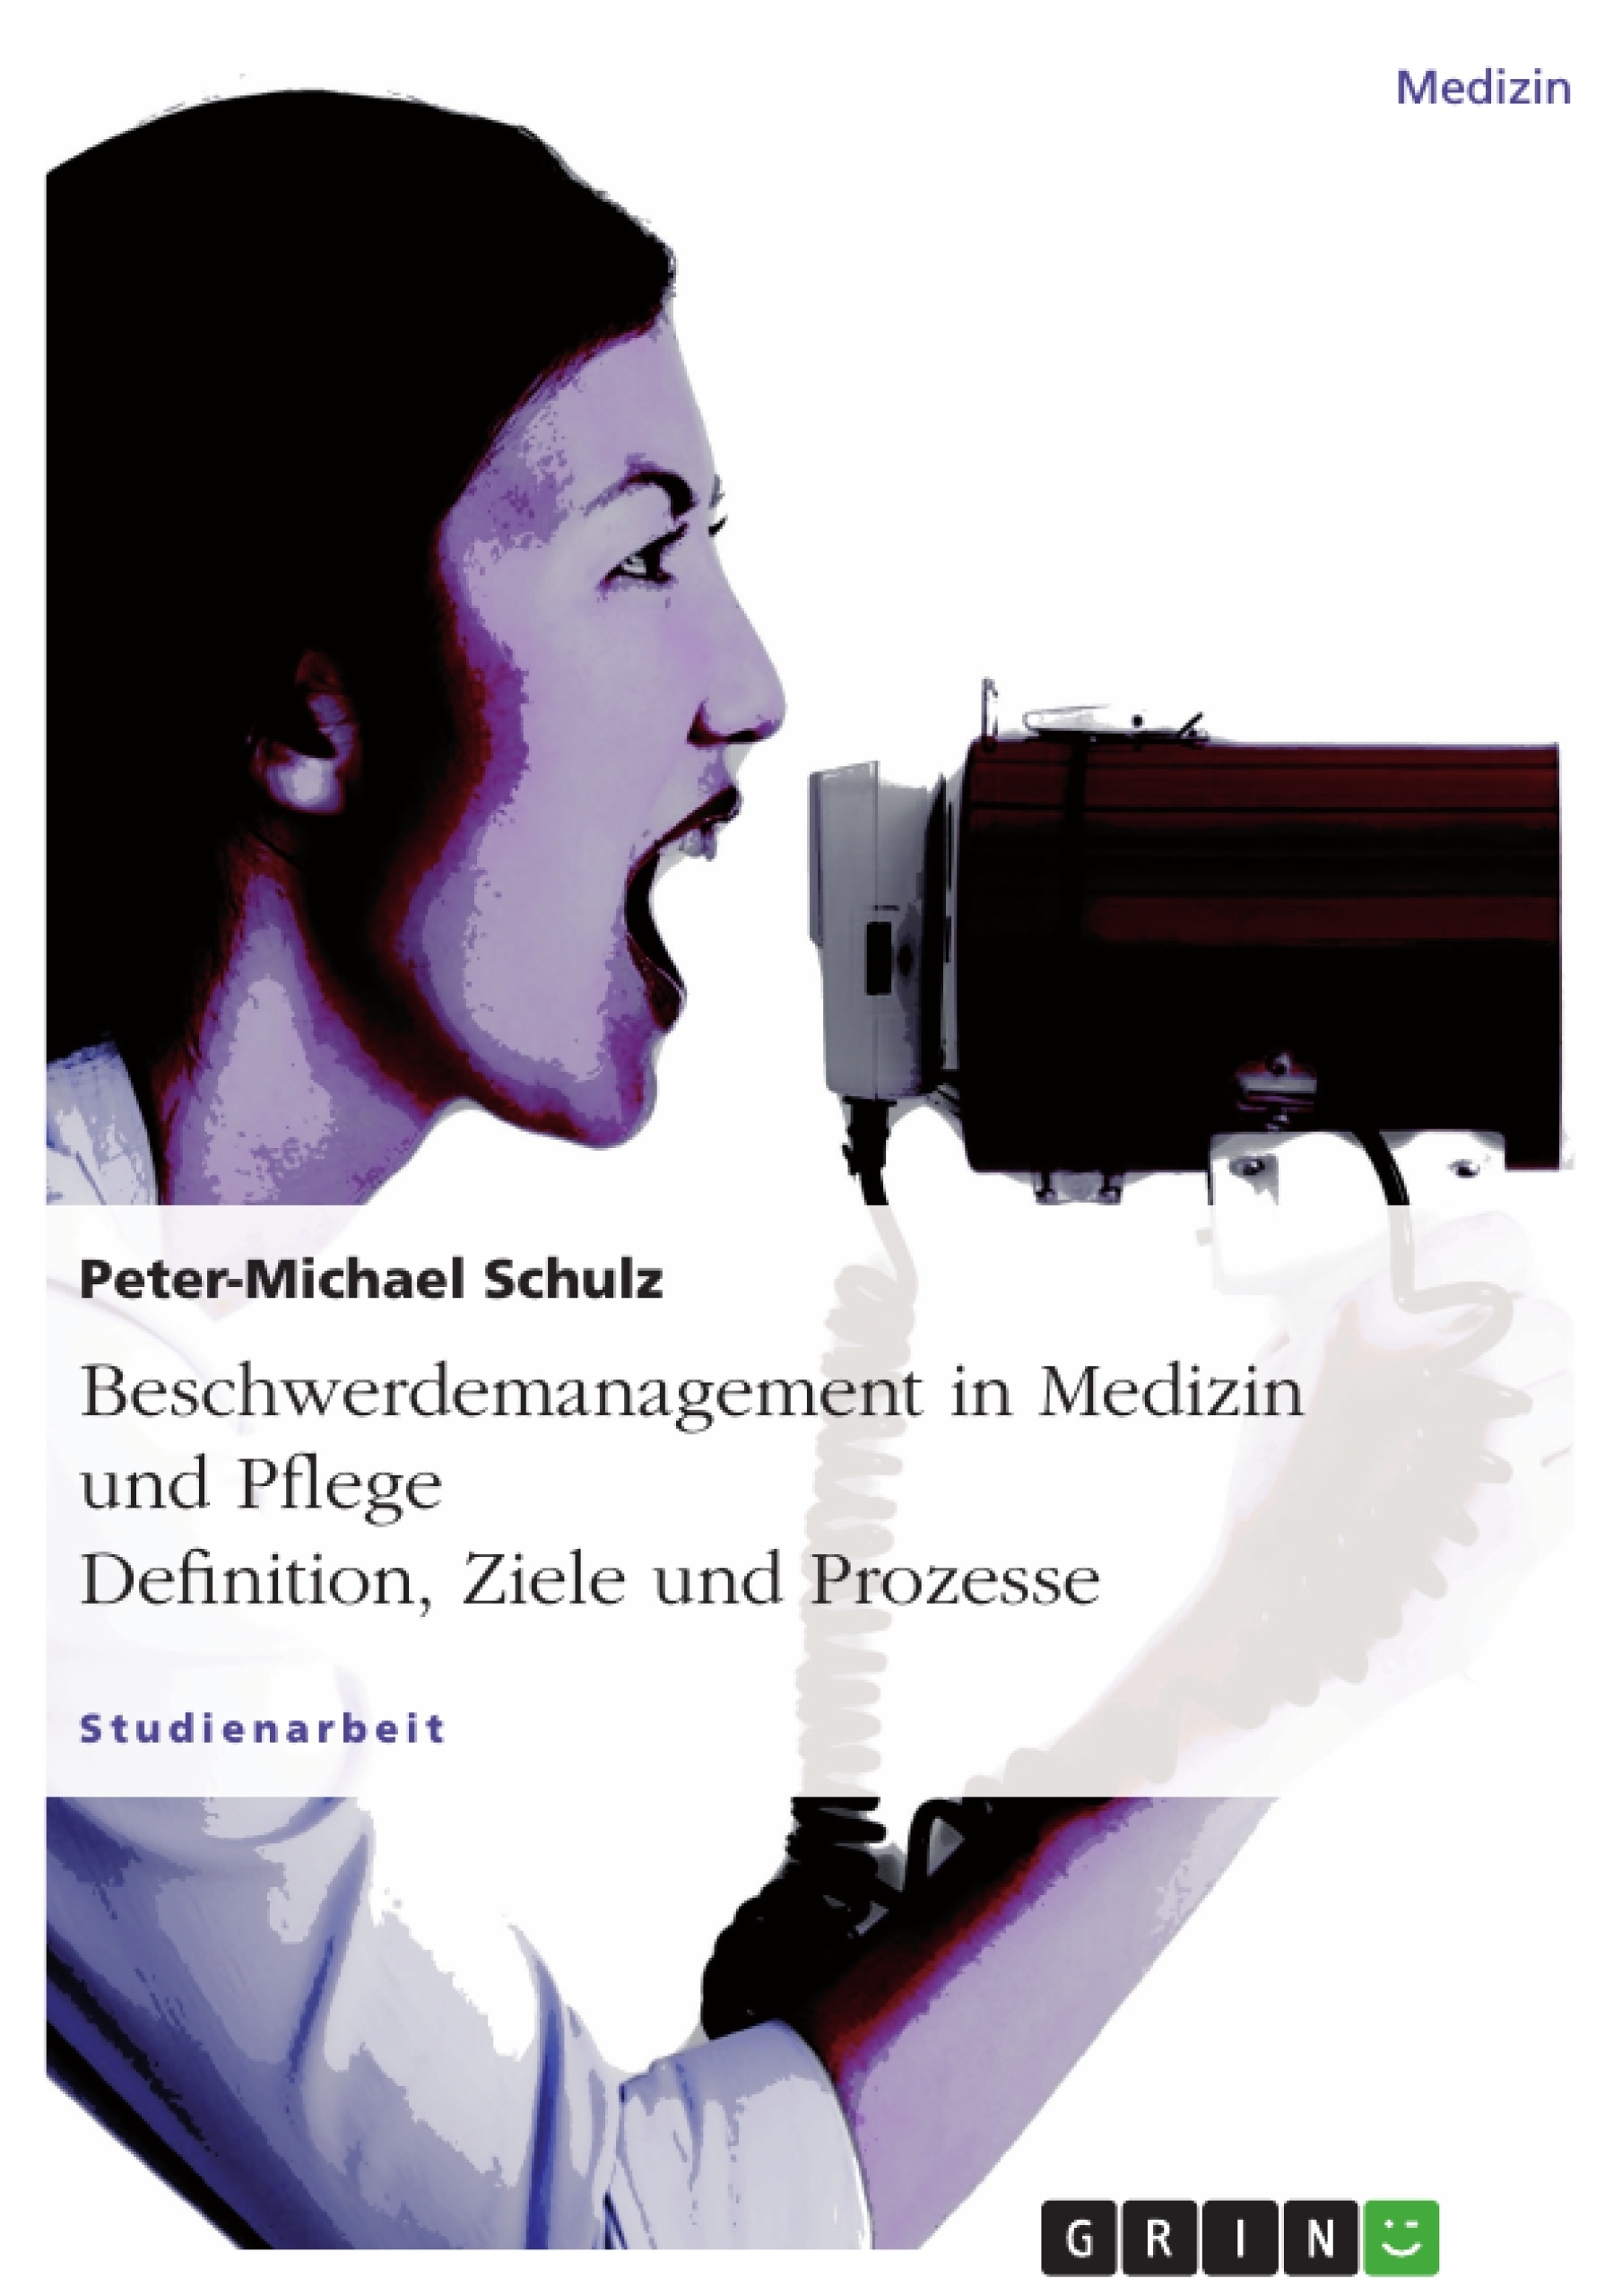 Title: Beschwerdemanagement in Medizin und Pflege. Definition, Ziele und Prozesse